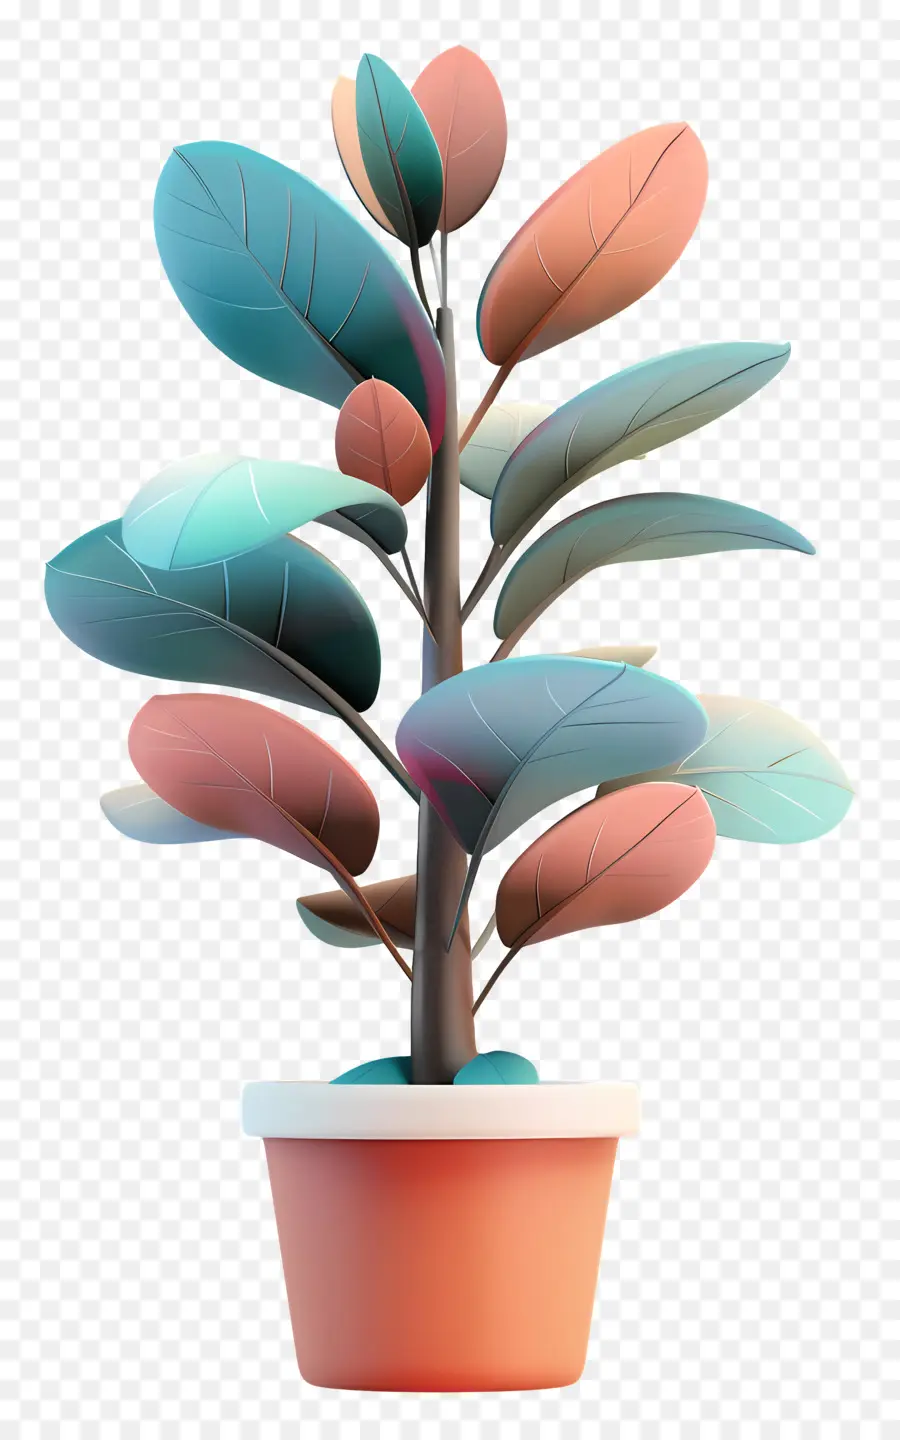 albero della gomma - Pianta in vaso artistica con foglie verdi astratte